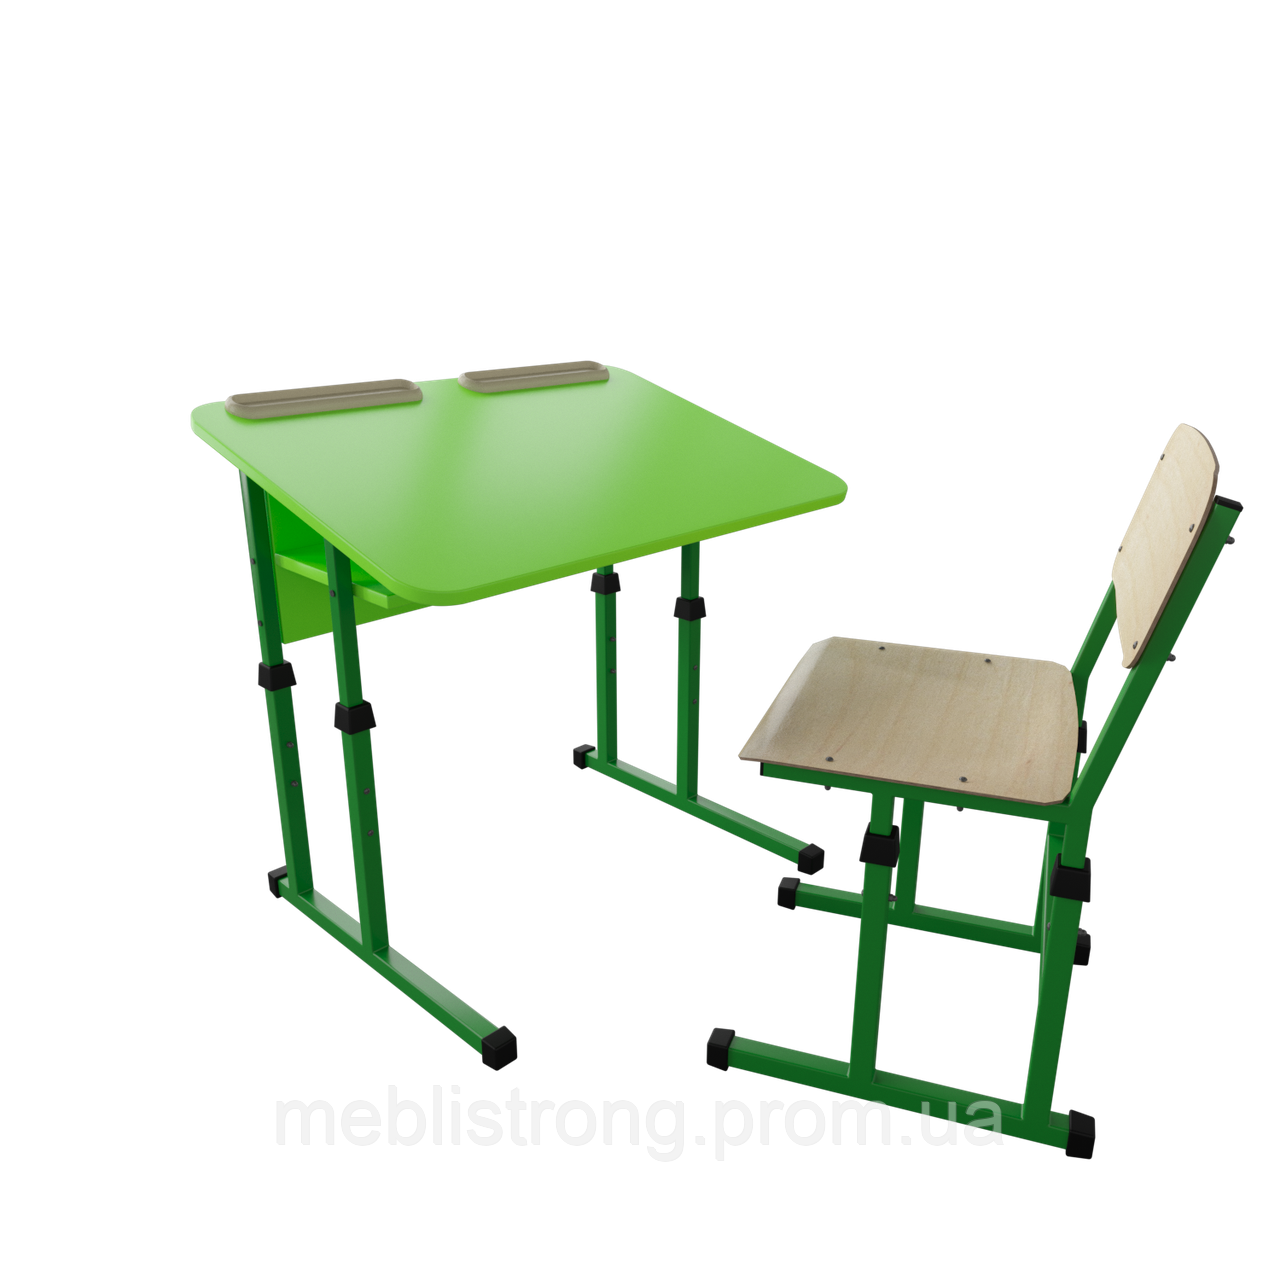 Школьная парта и стул антисколиозные - Школьный комплект 2/4 (Металл-Дизайн)